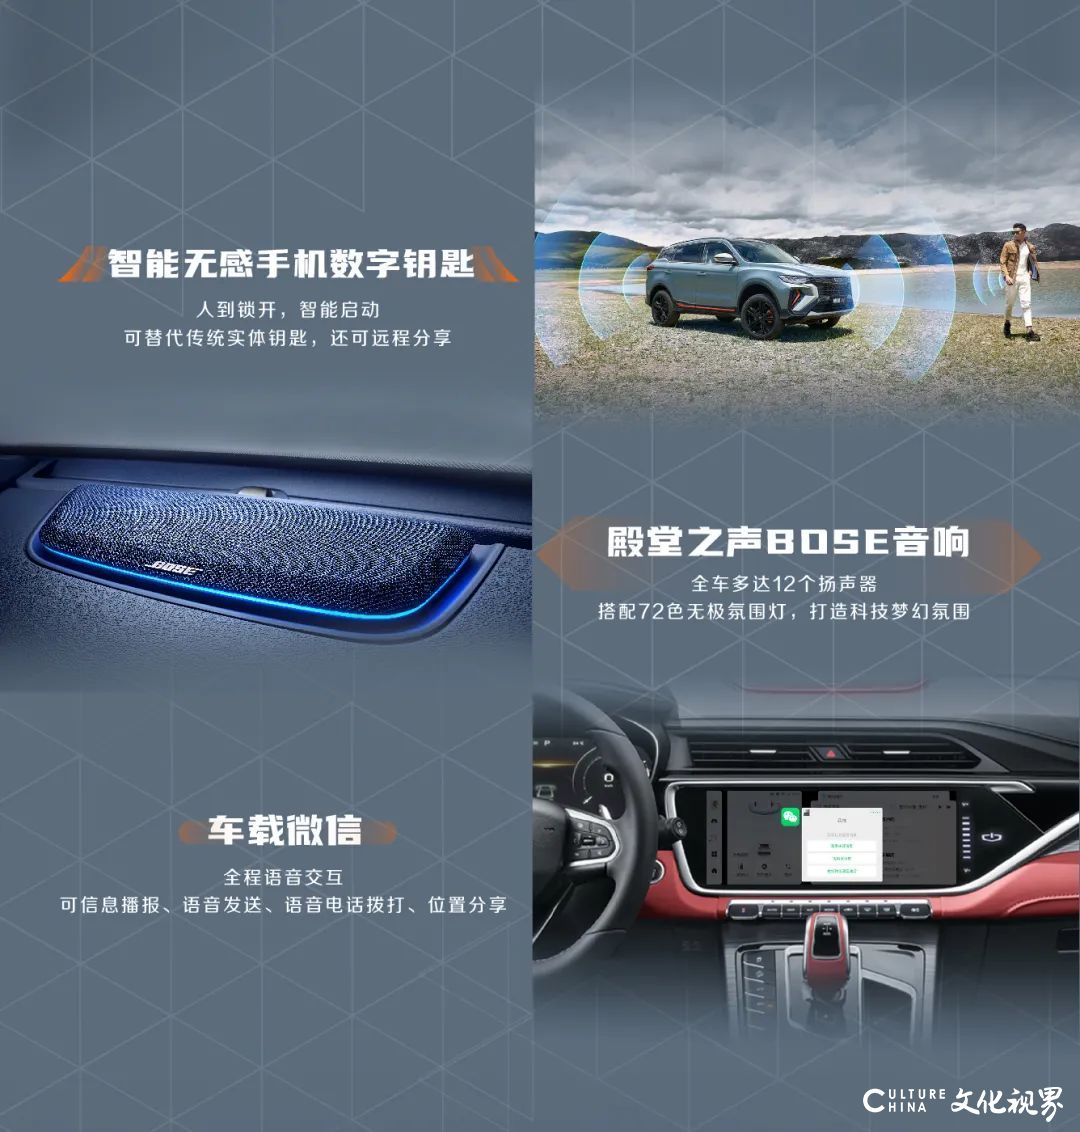 中国风范智能SUV——吉利博越X燃动上市